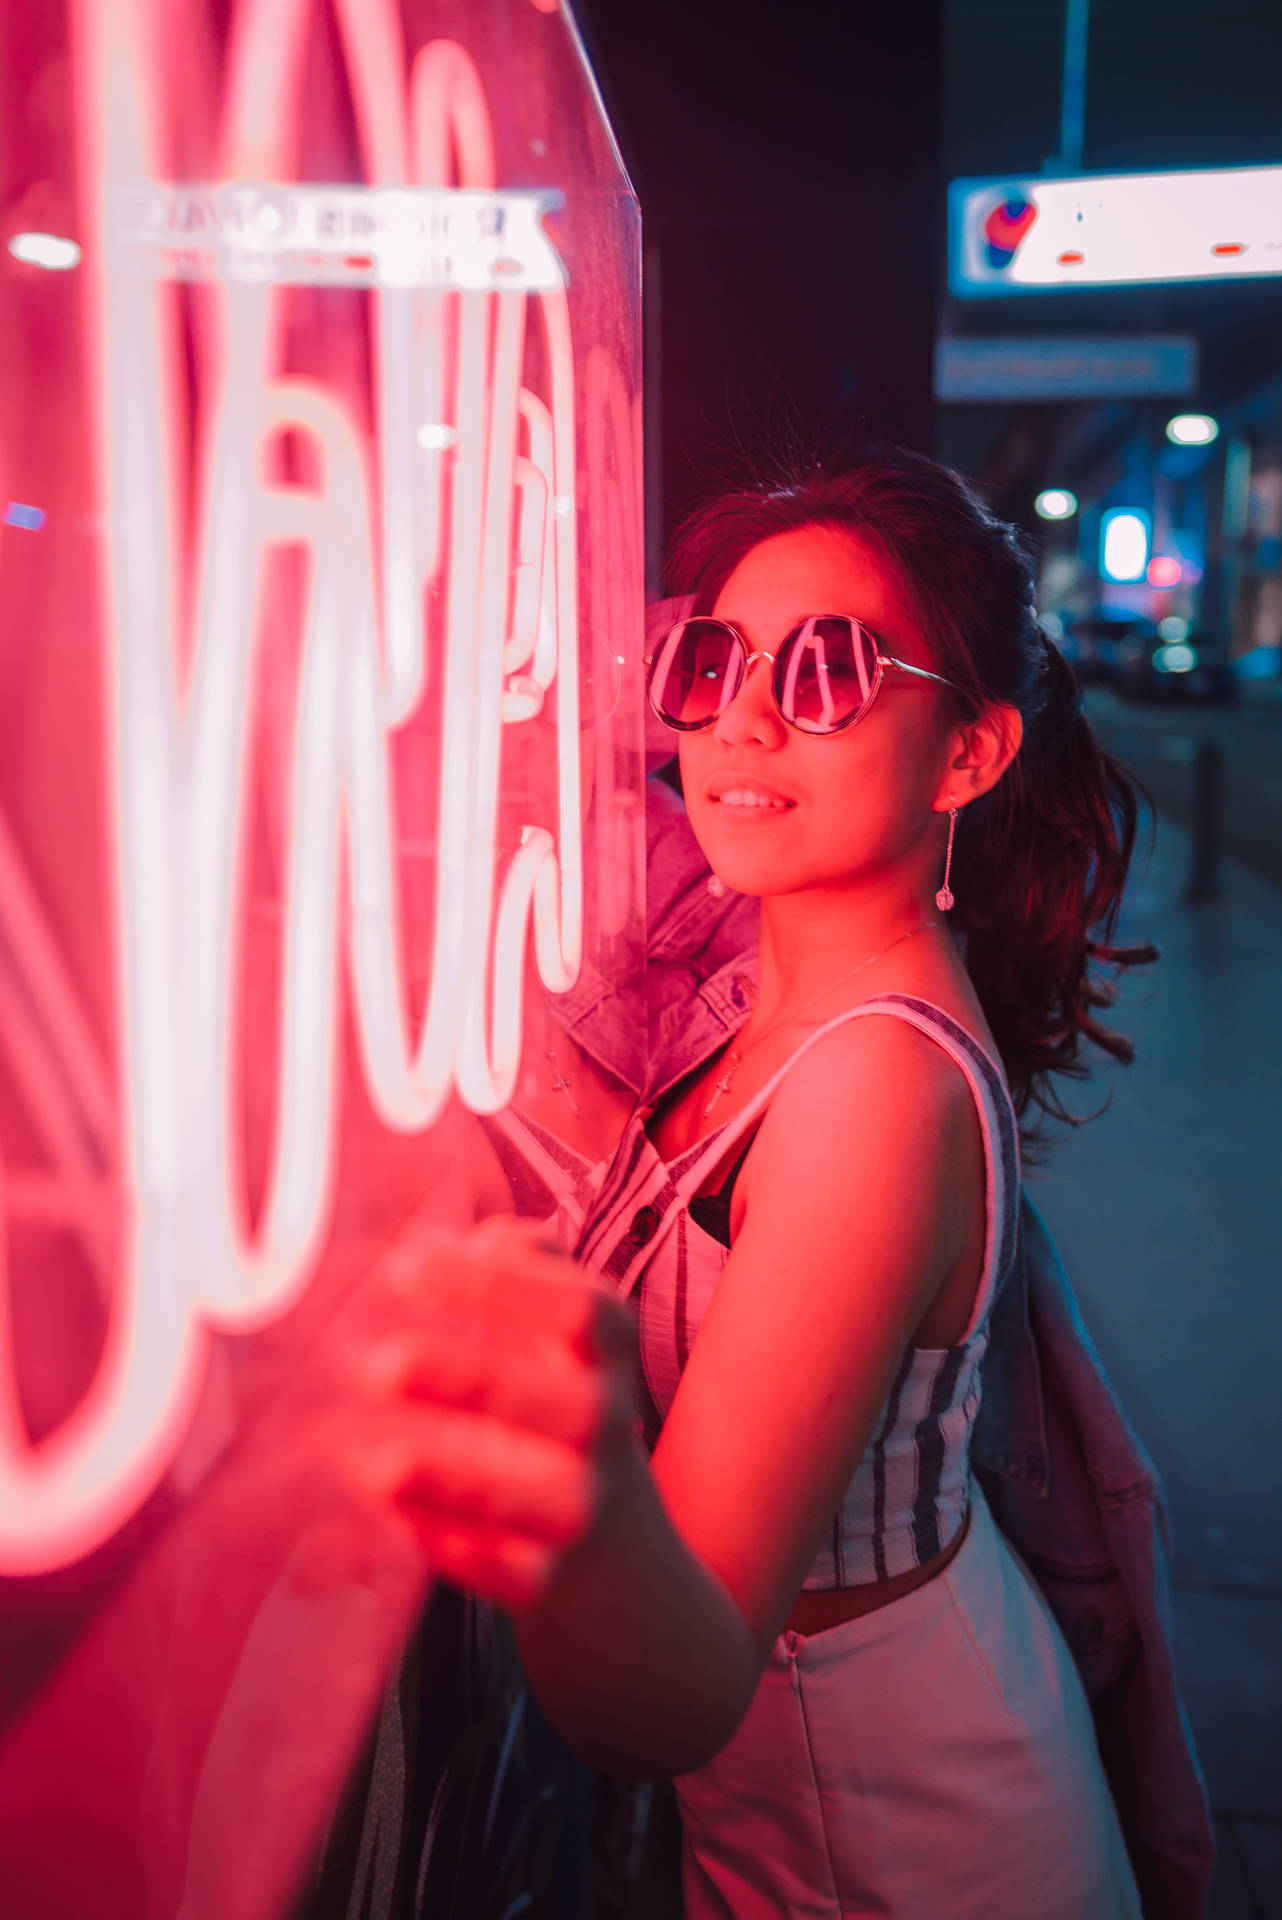 Sunglasses Neon Smile Wallpaper